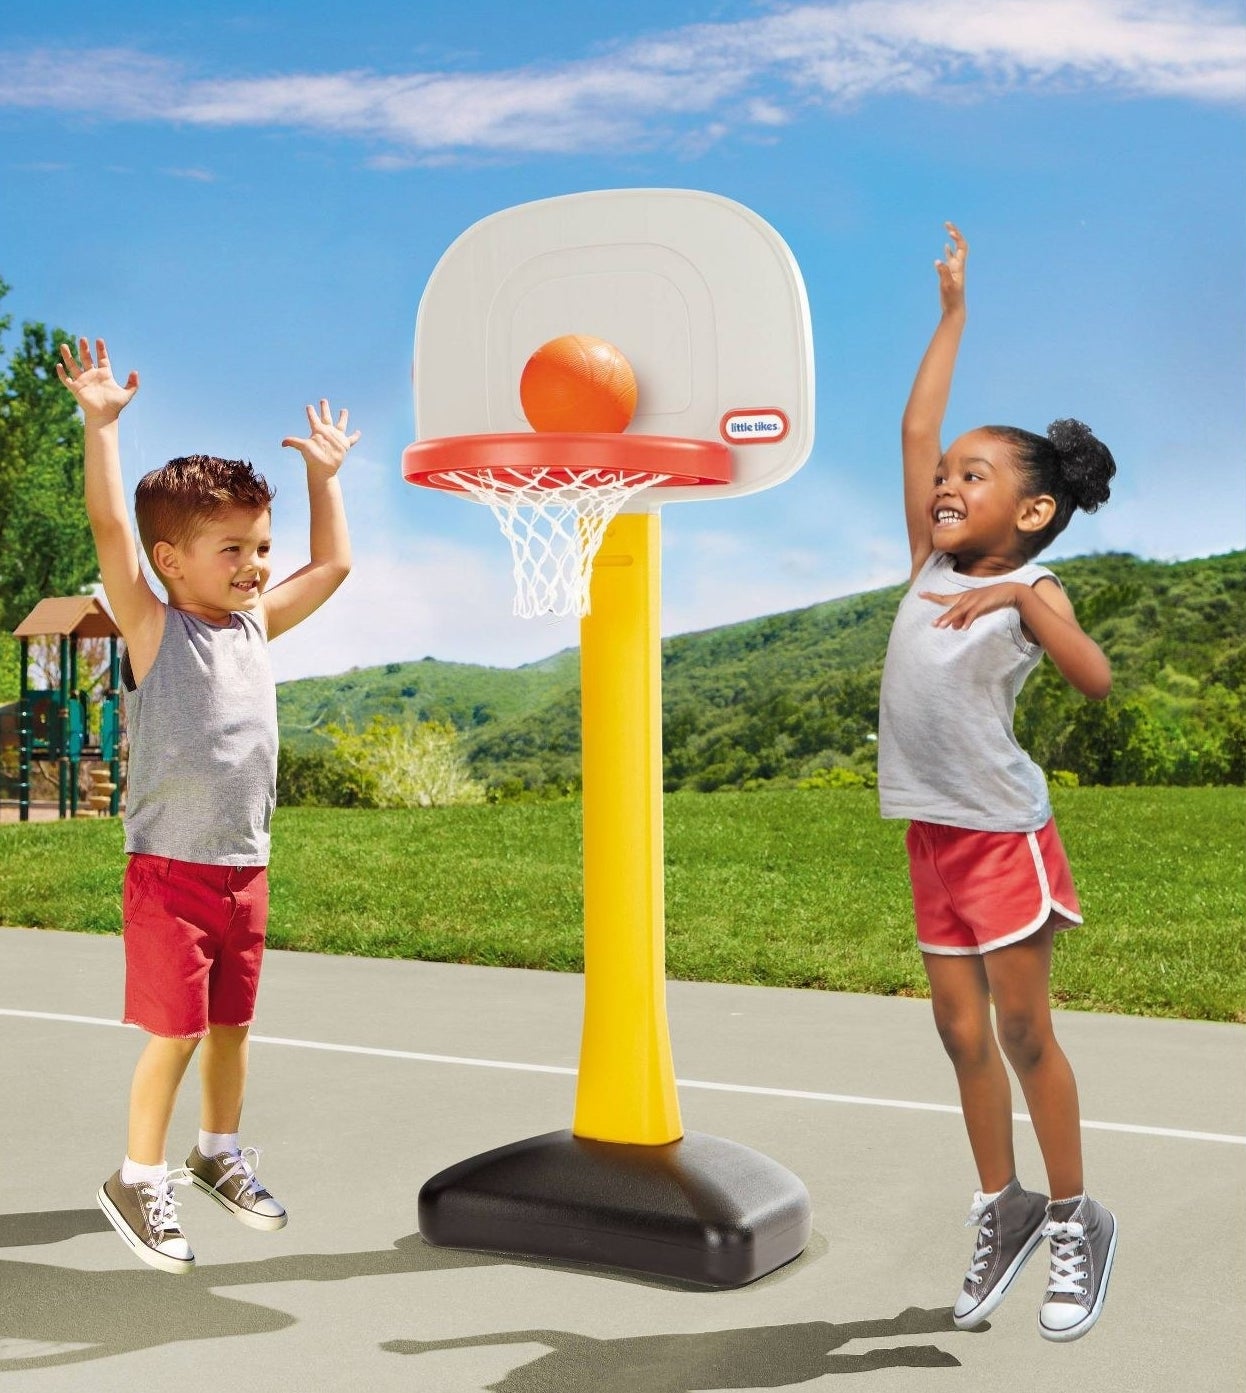 Kids playing with basketball set